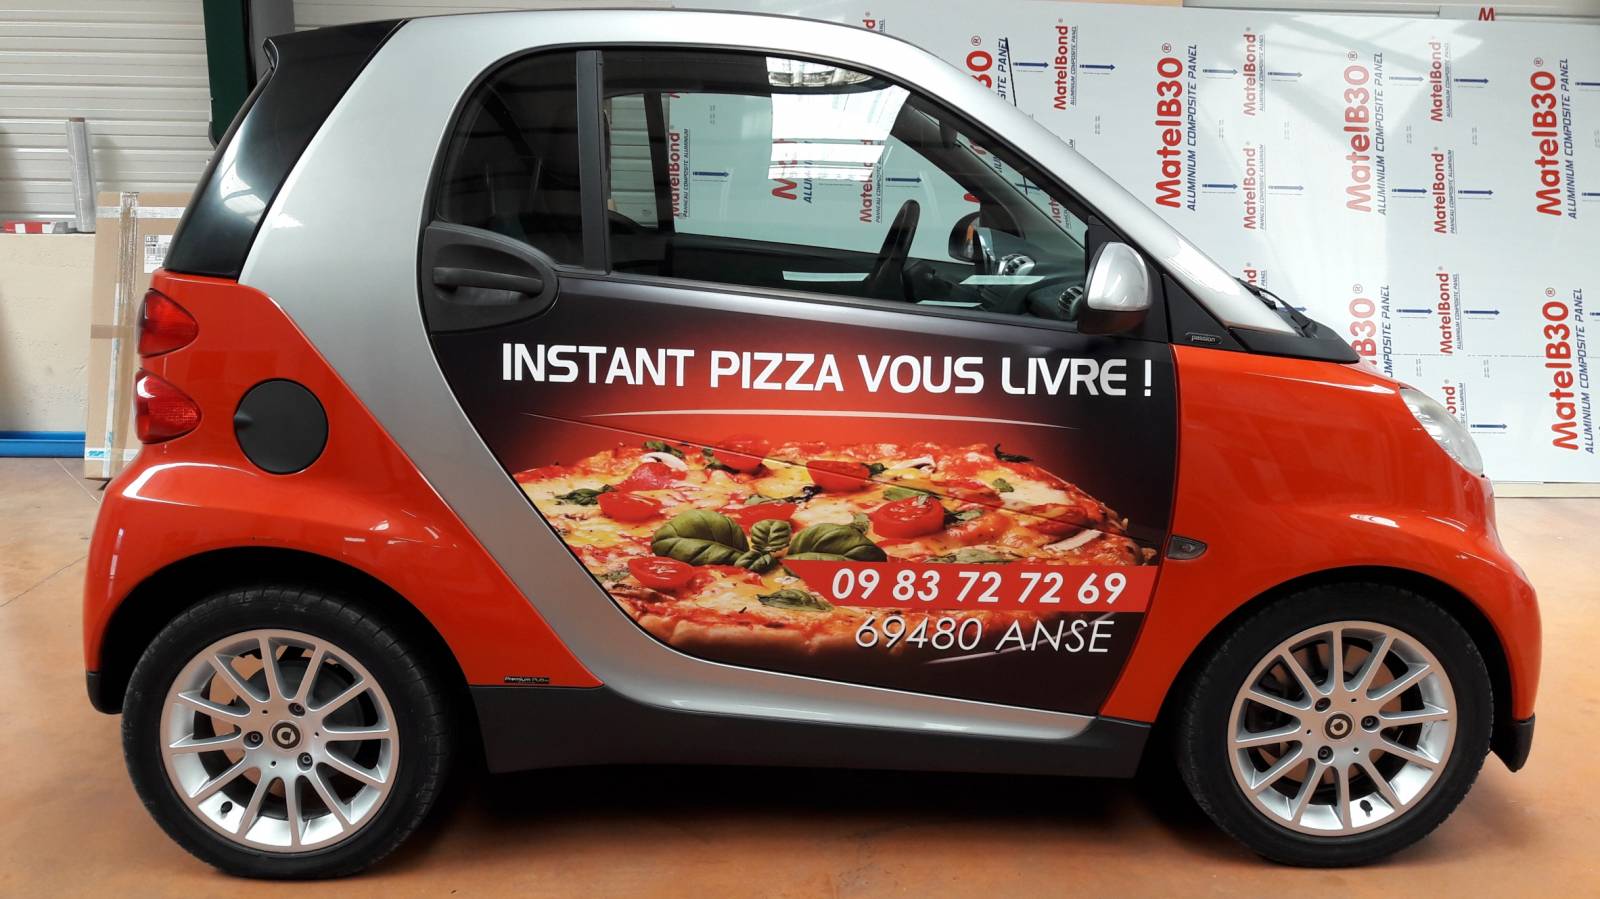 Flocage lettres et logos adhésifs collés sur voiture publicité entreprise Villefranche sur Saône Beaujolais Calade et Arnas 